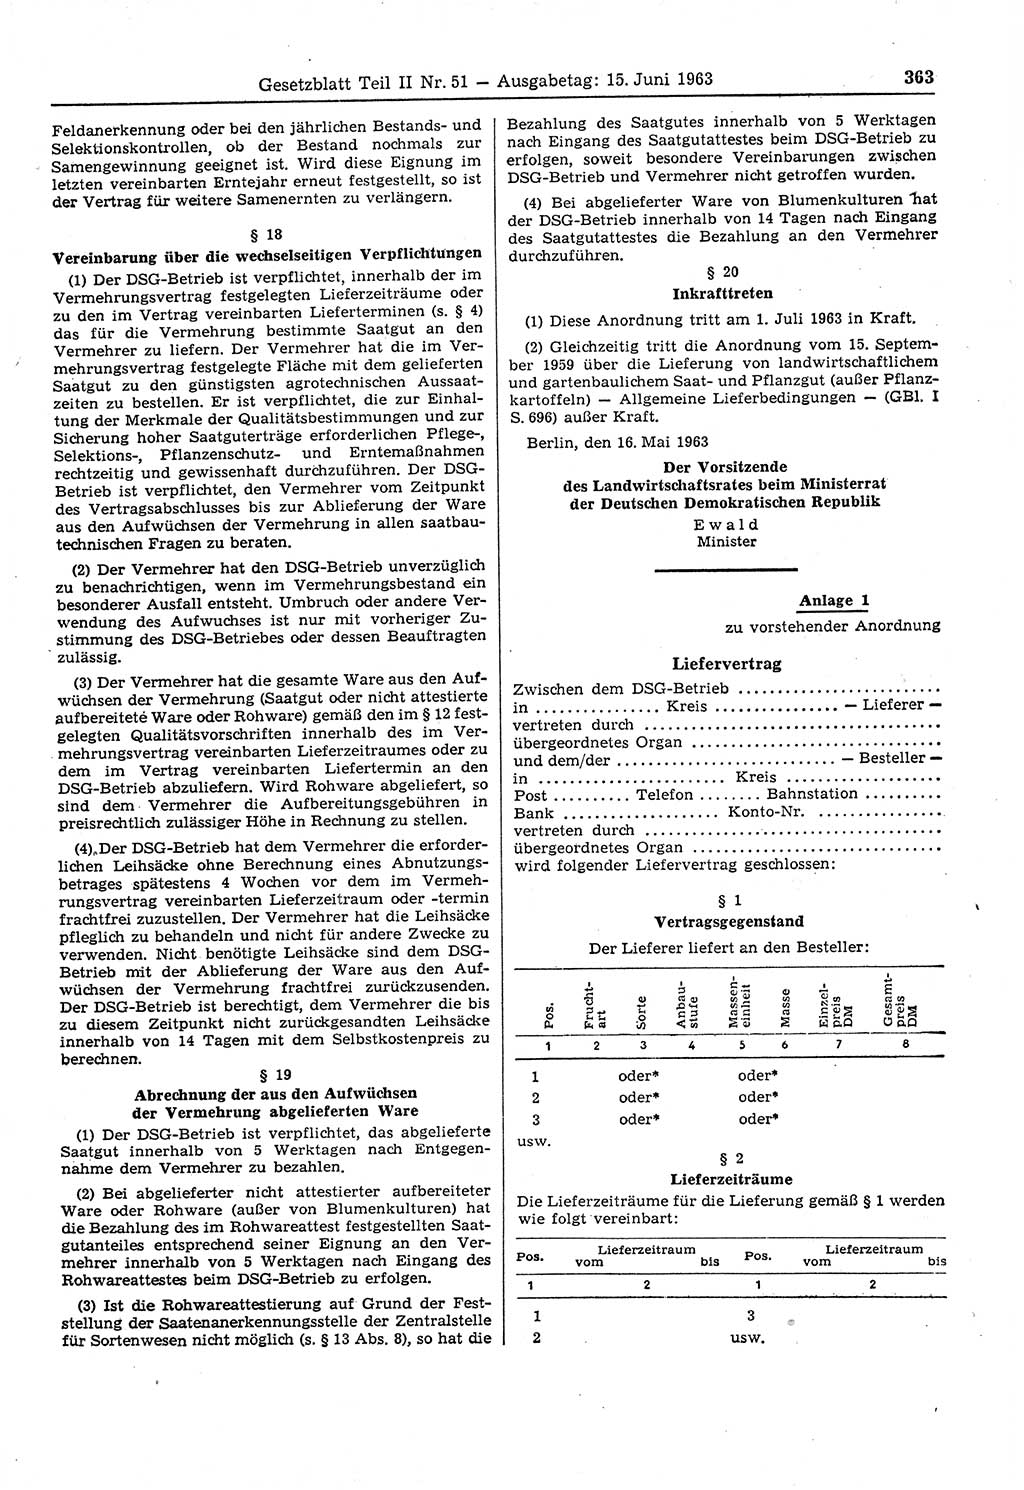 Gesetzblatt (GBl.) der Deutschen Demokratischen Republik (DDR) Teil ⅠⅠ 1963, Seite 363 (GBl. DDR ⅠⅠ 1963, S. 363)